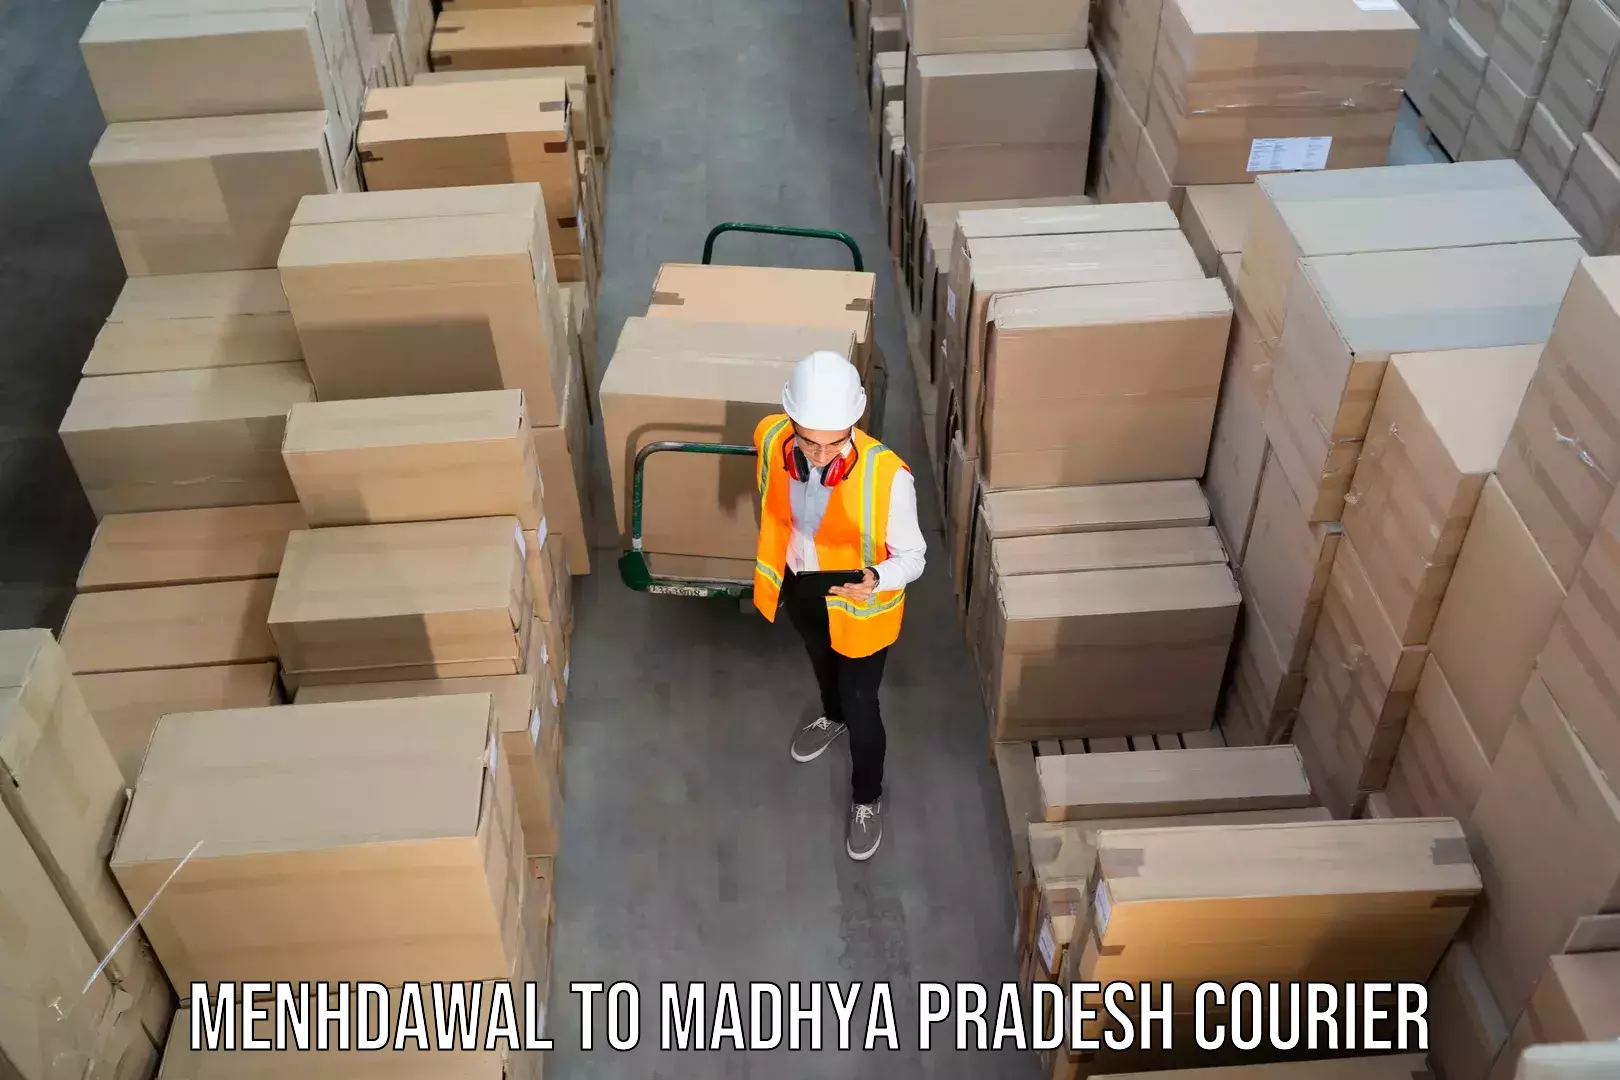 24/7 shipping services Menhdawal to Vidisha